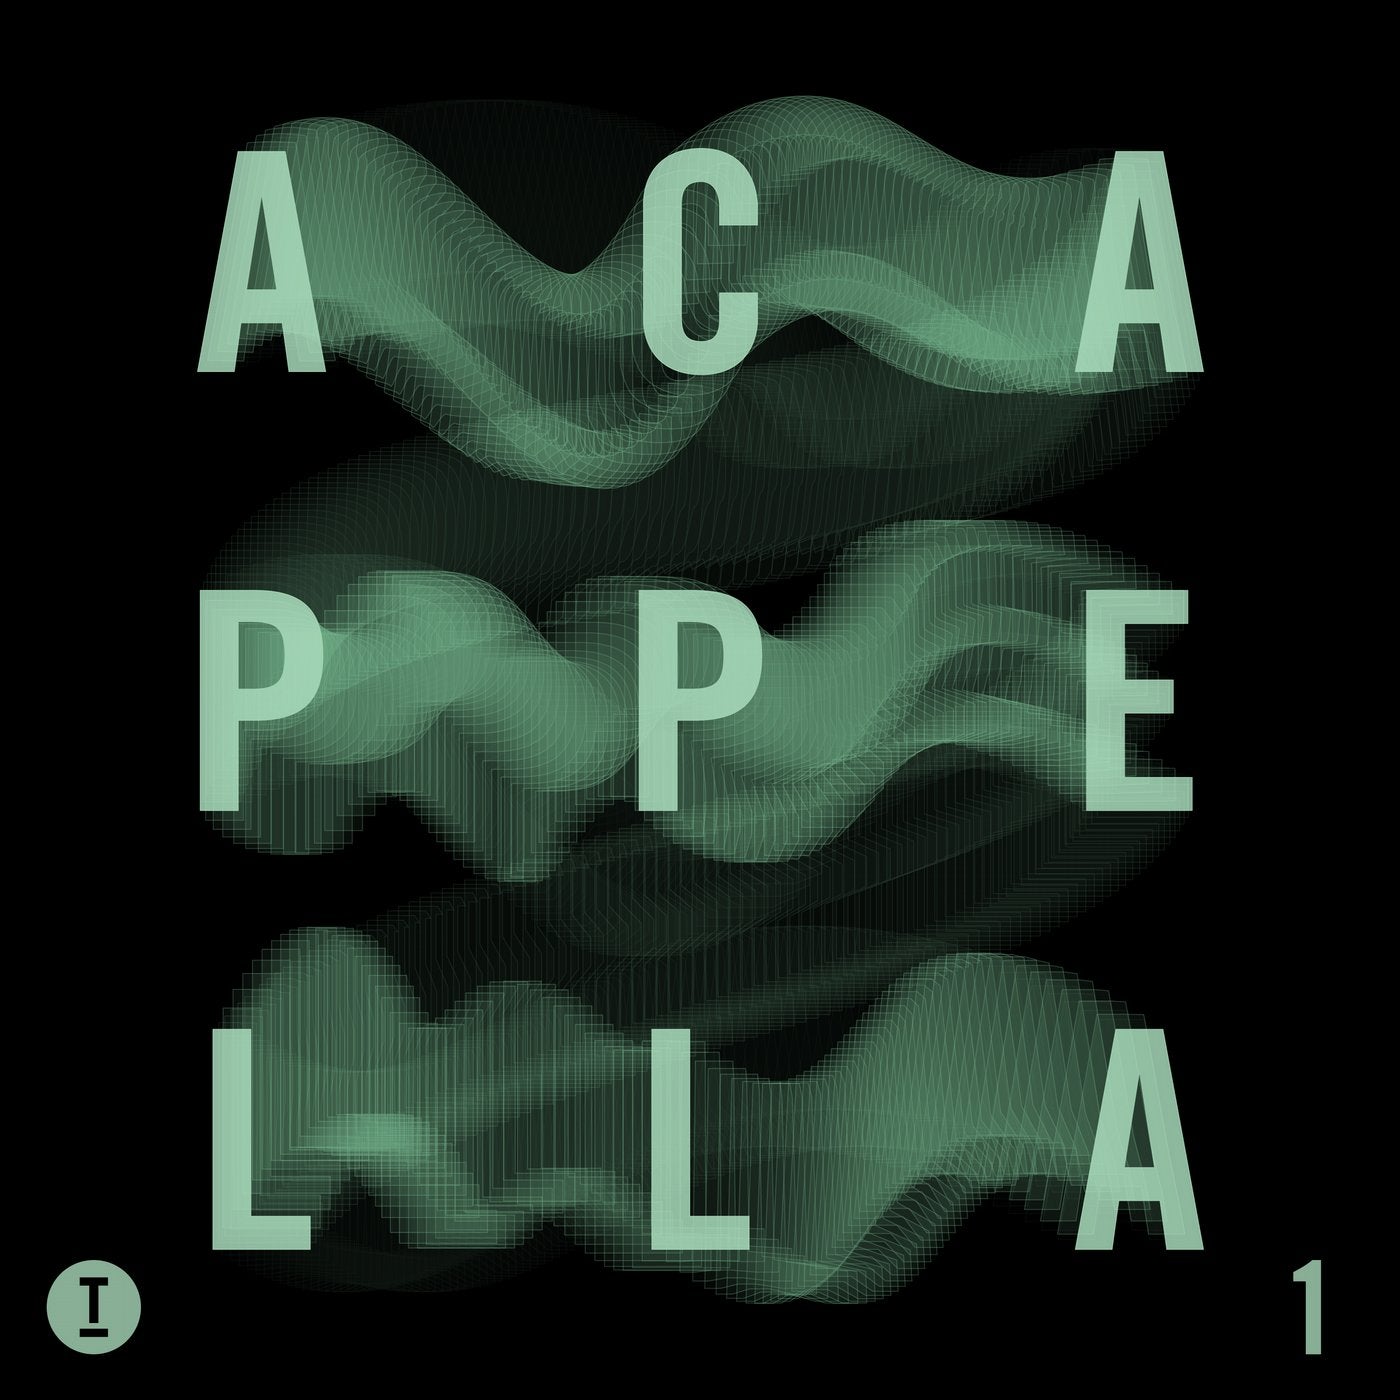 Toolroom Acapellas Vol. 1